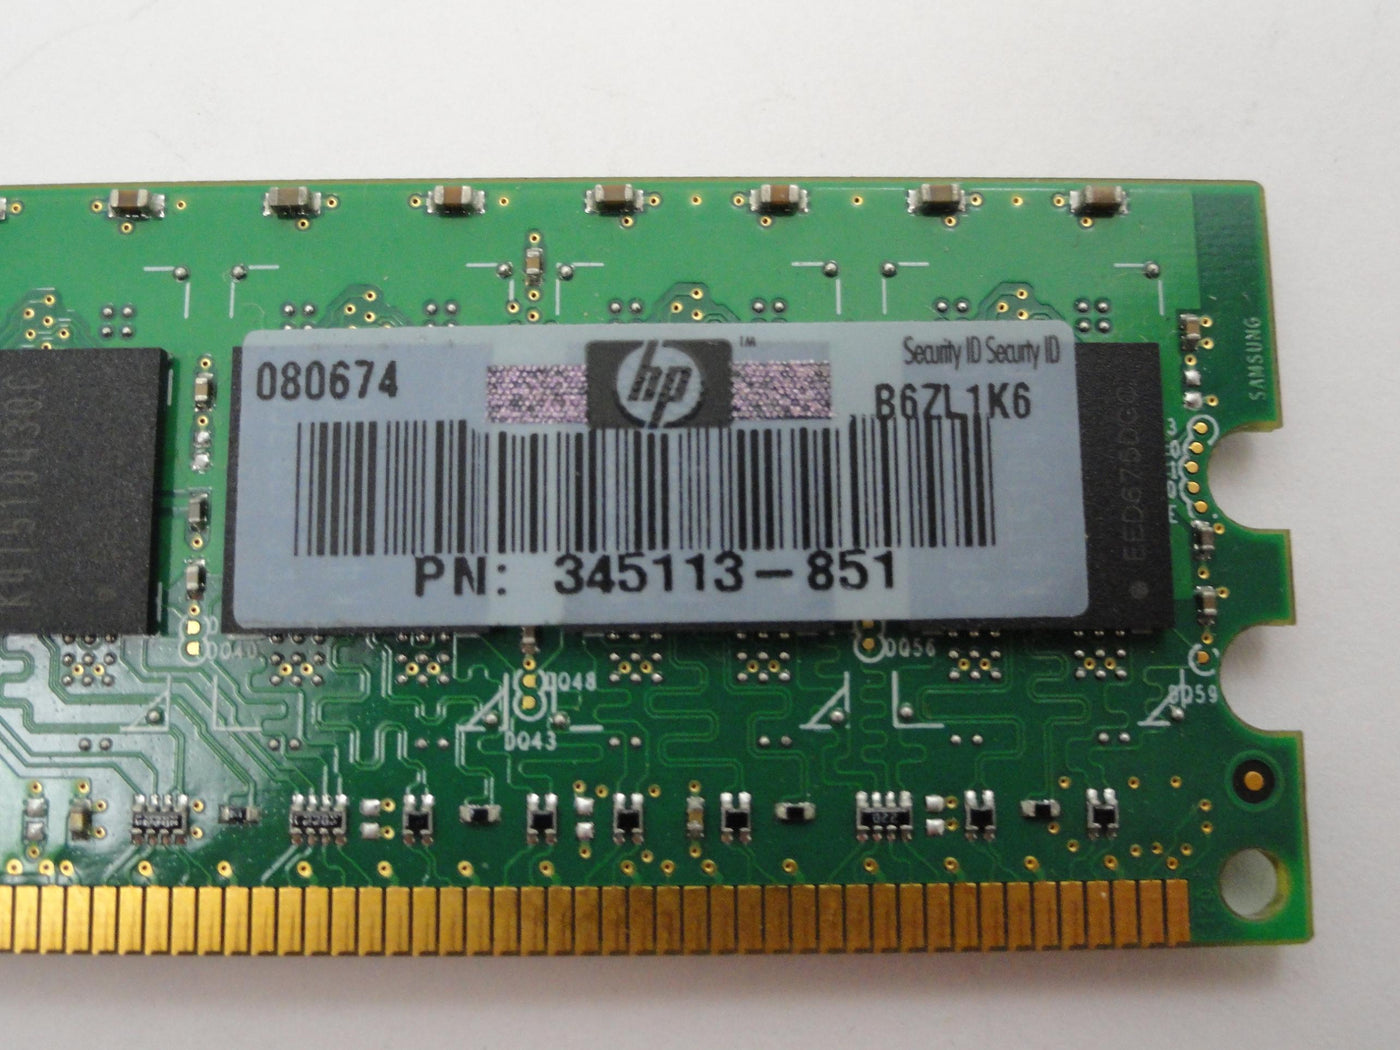 PR18236_PC2-3200R-333-12-C3_Samsung HP 1Gb DDR2-400MHz PC2-3200R ECC Reg RAM - Image2